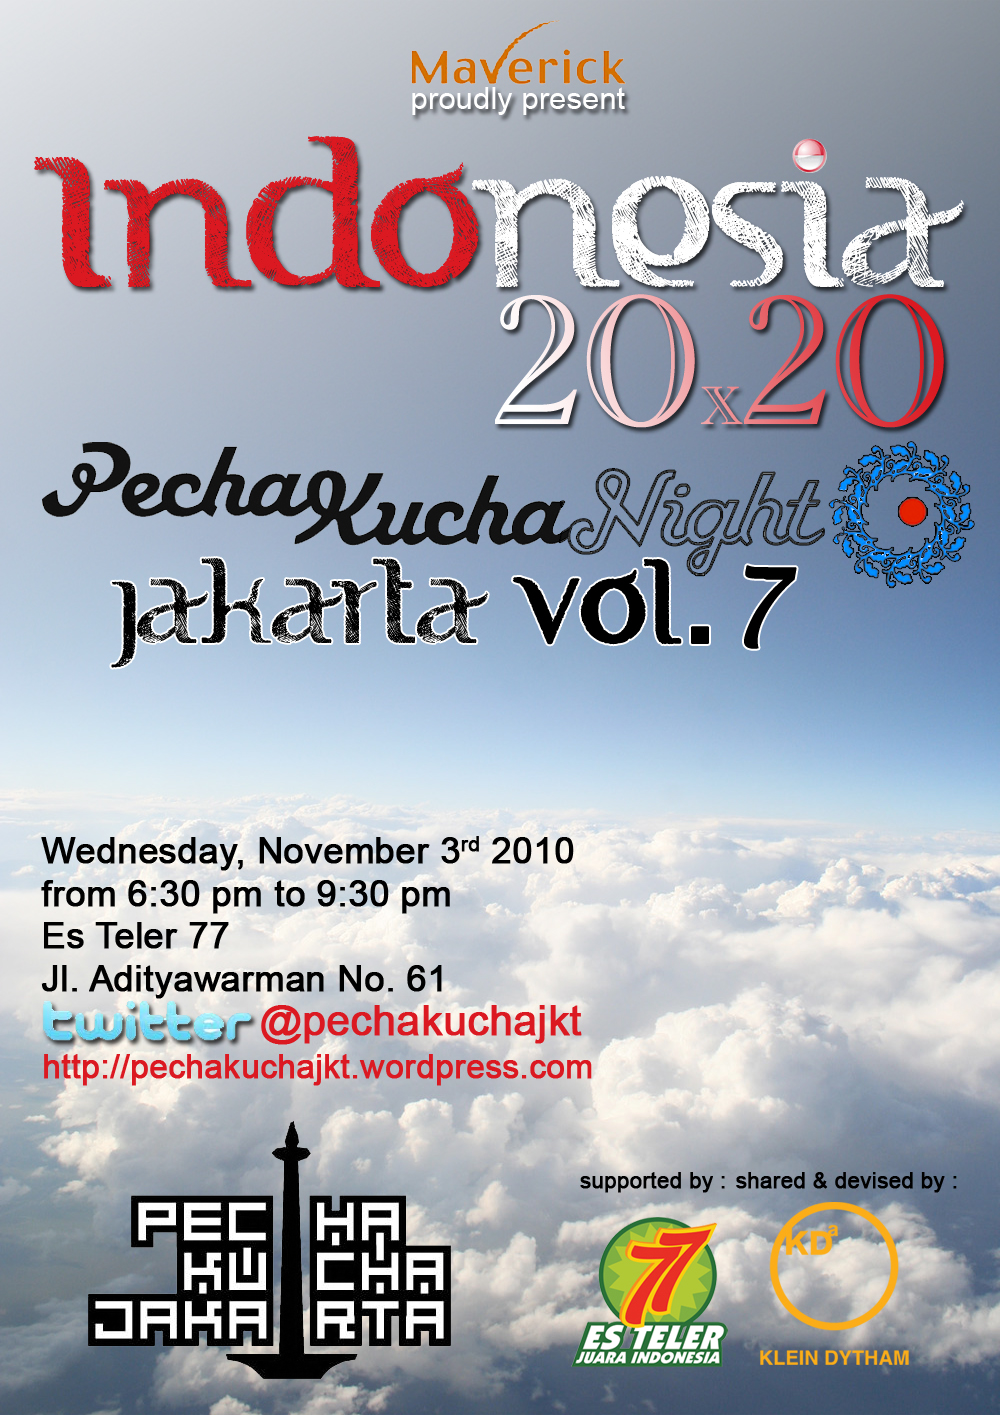 Pecha Kucha JKT Vol 7 Indonesia 2020 Pecha Kucha Night Jakarta